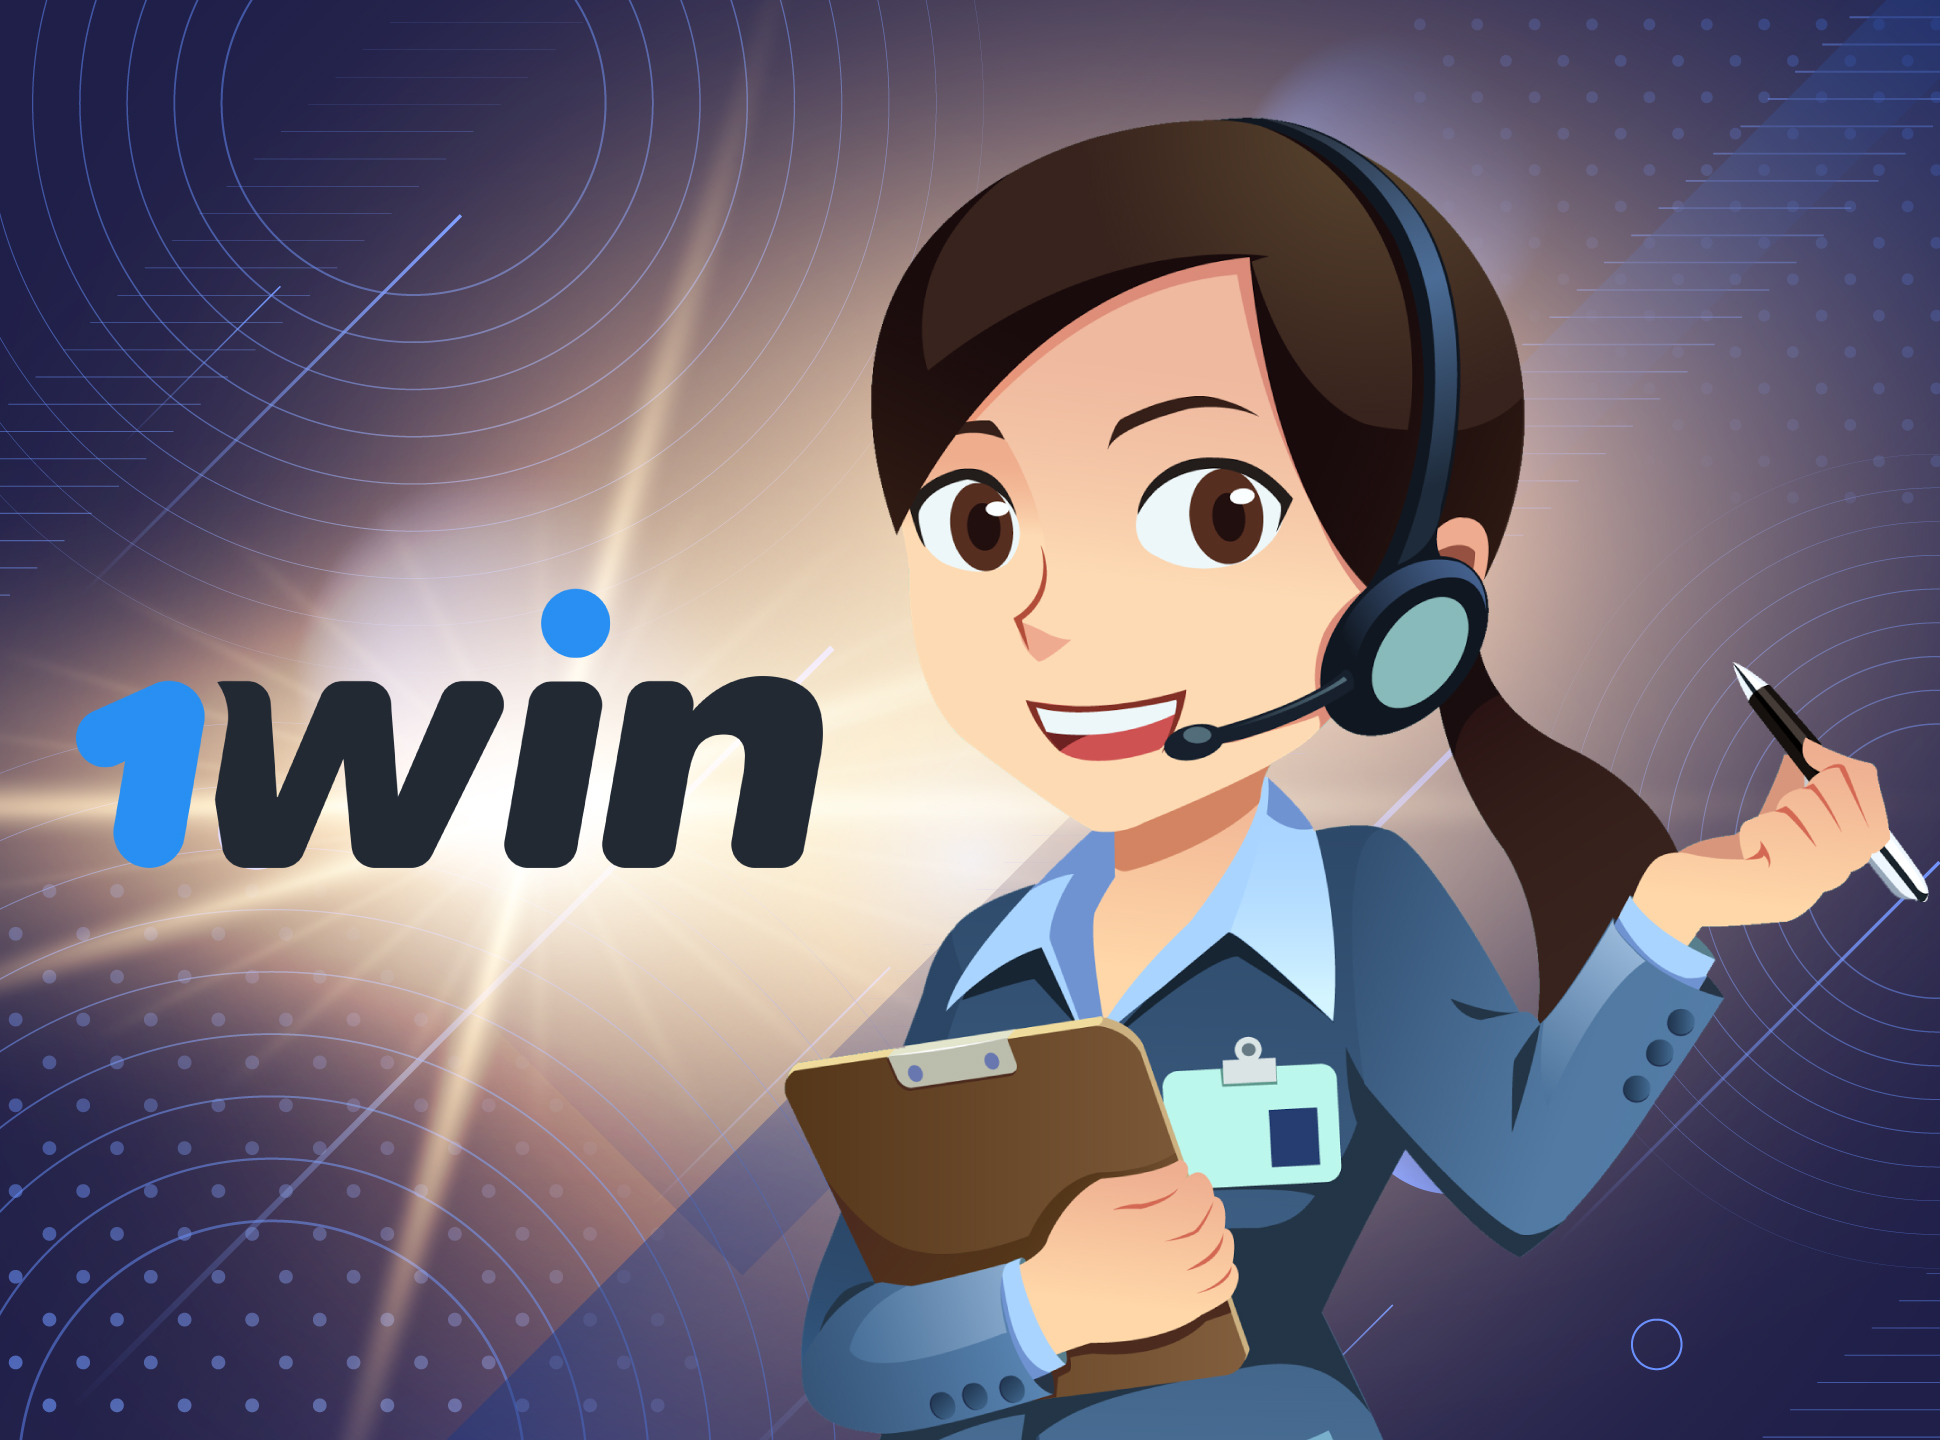 1win está disponível 24 horas por dia, 7 dias por semana.